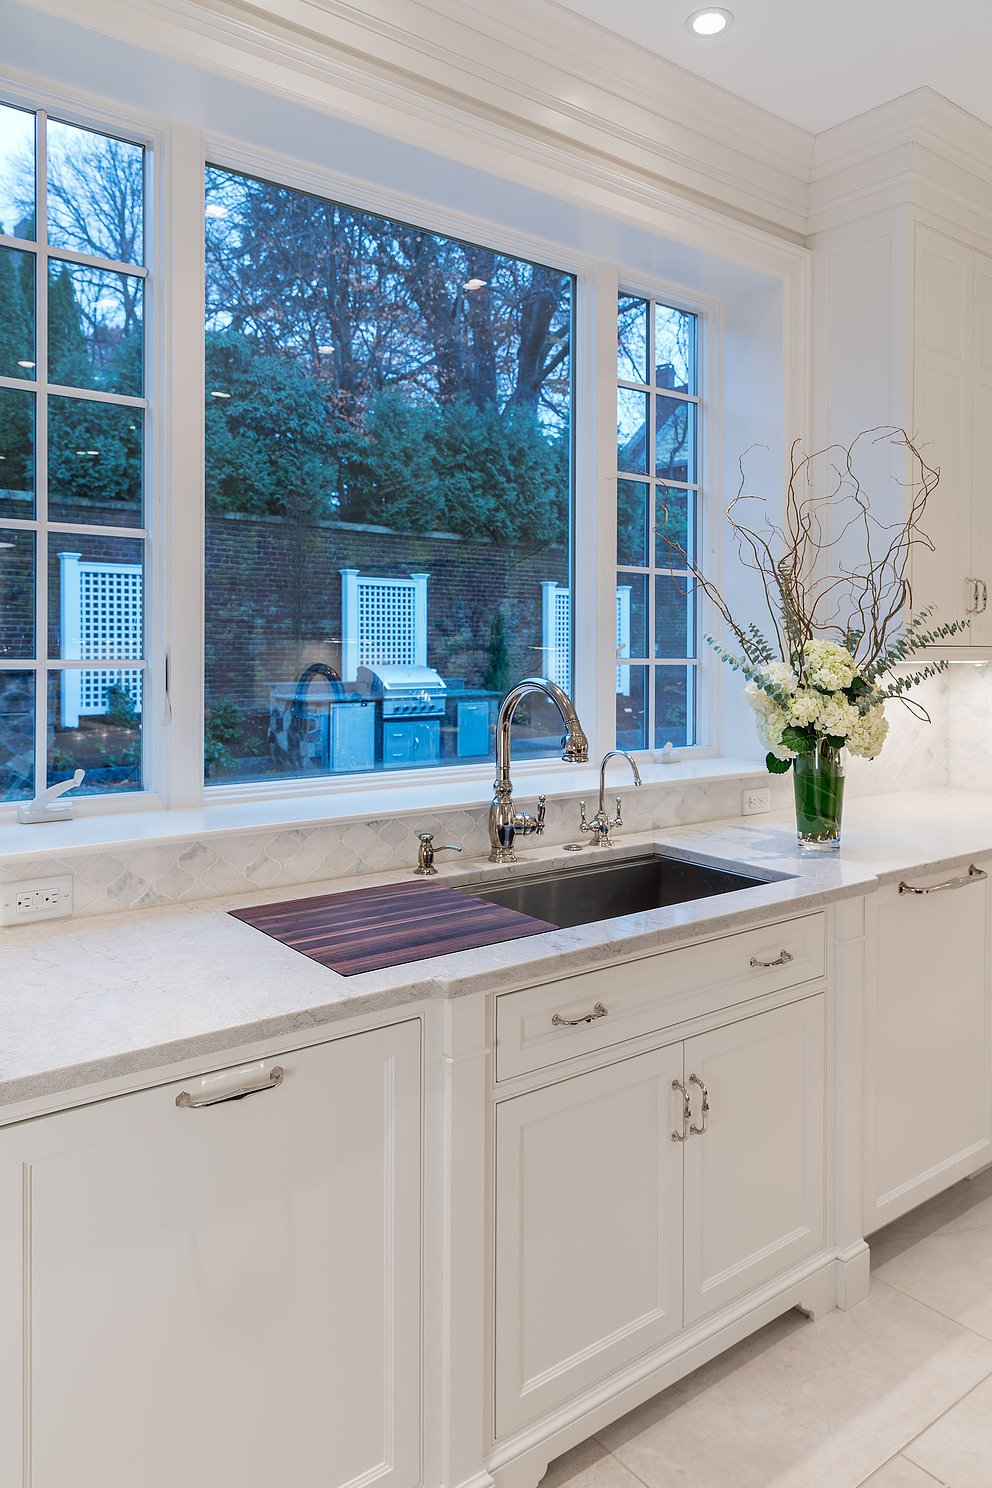 kitchen sink in kitchen renovation in brookline, massachusetts